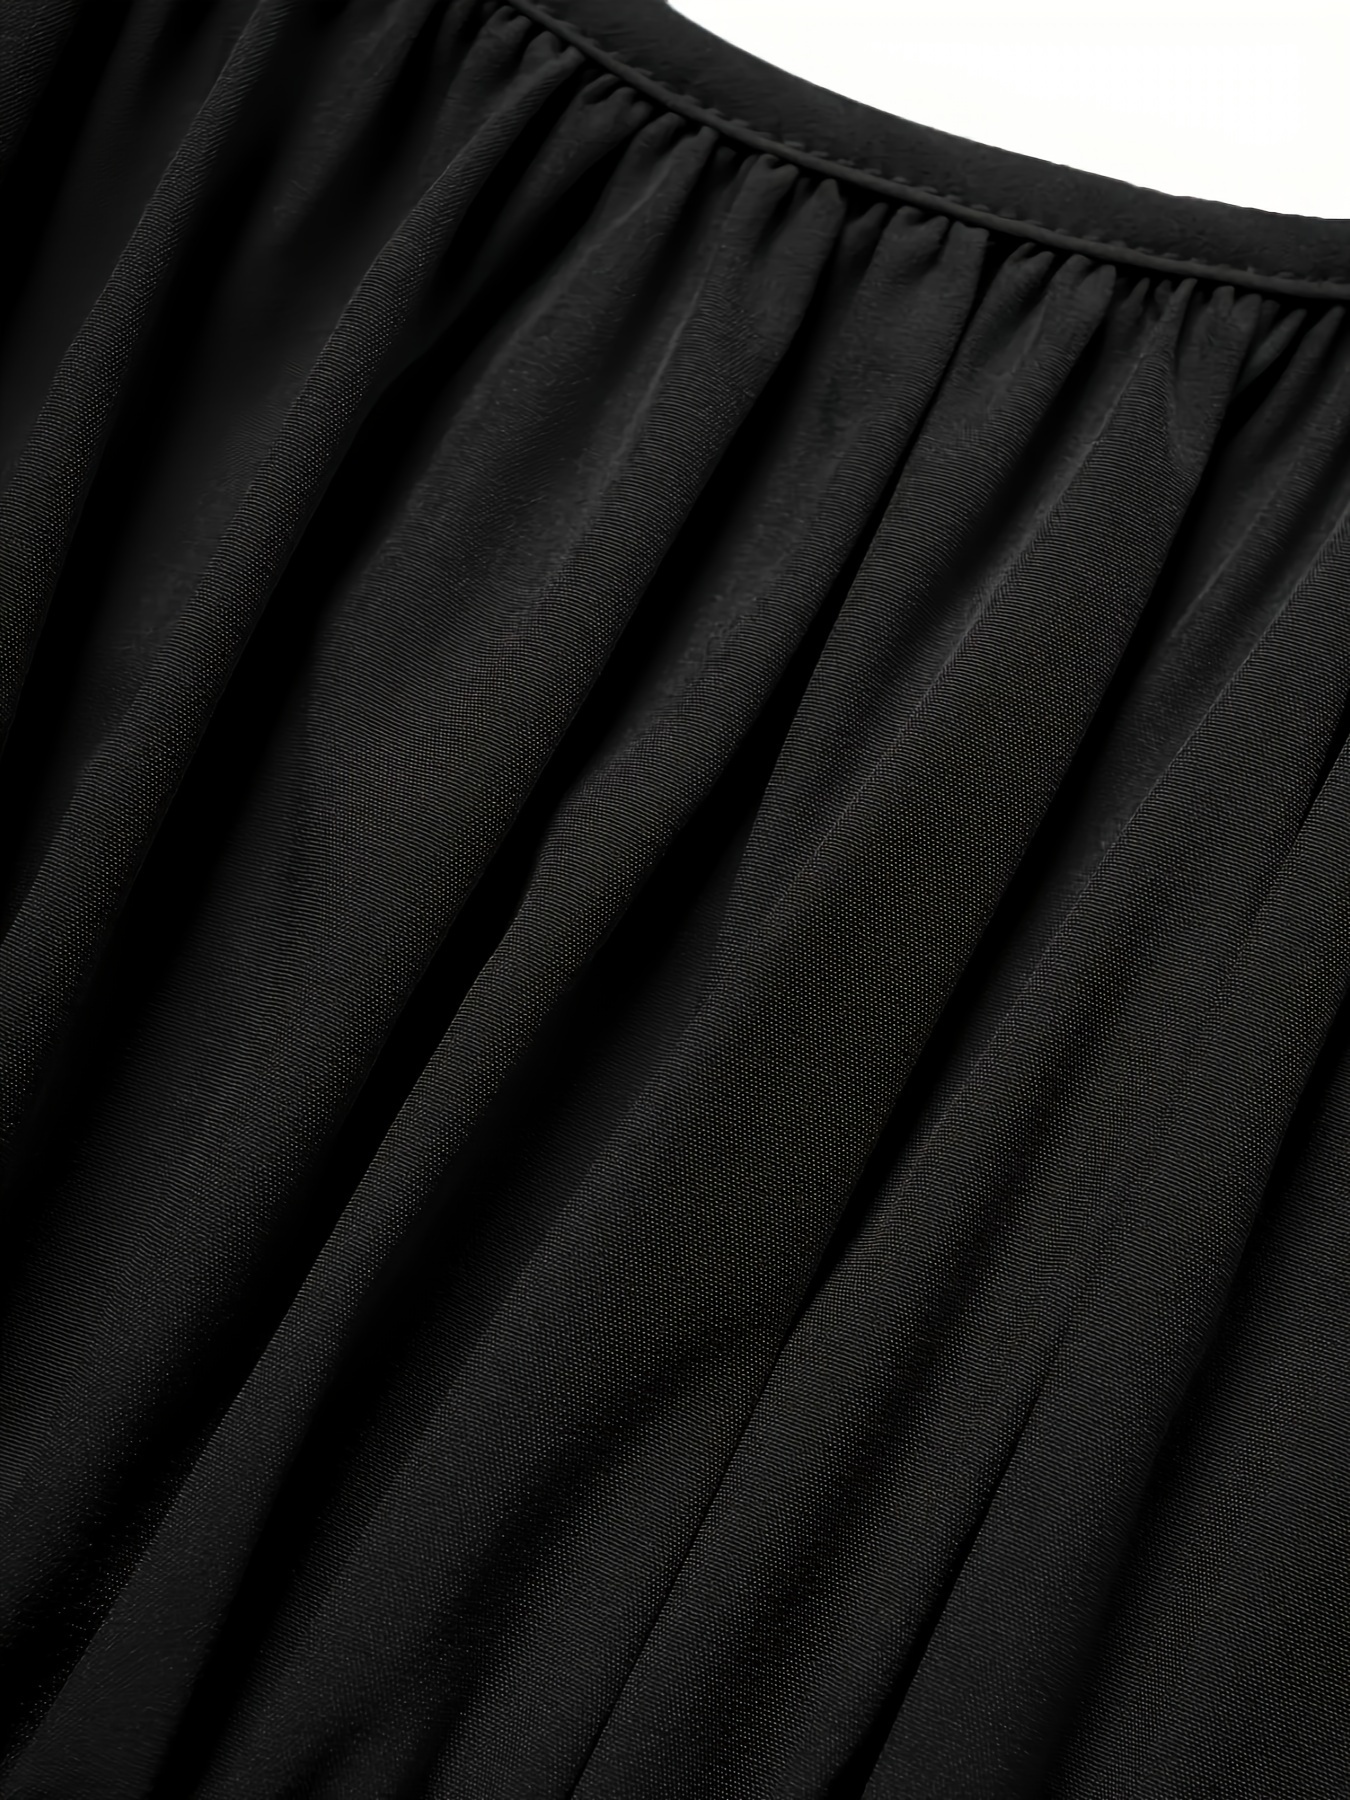 فستان بحلقة متصلة بطباعة عباد الشمس، فستان كاجوال بدون أكمام مكشكش على شكل حرف A، ملابس نسائية